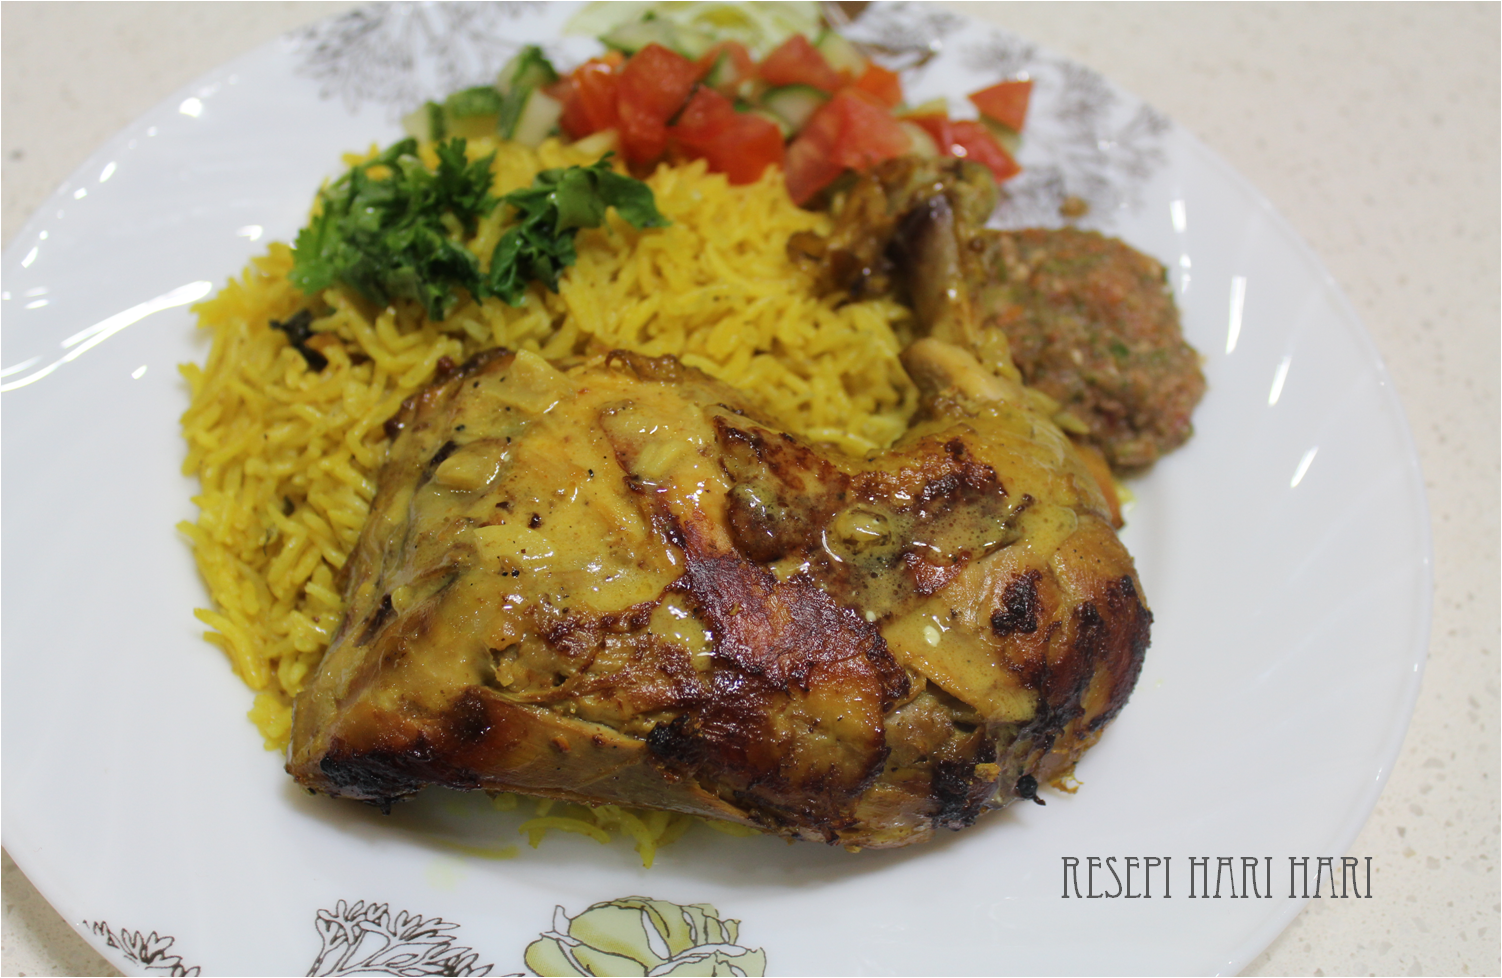 Recipes of Daily Cooking and Baking : Nasi Arab Mandy 